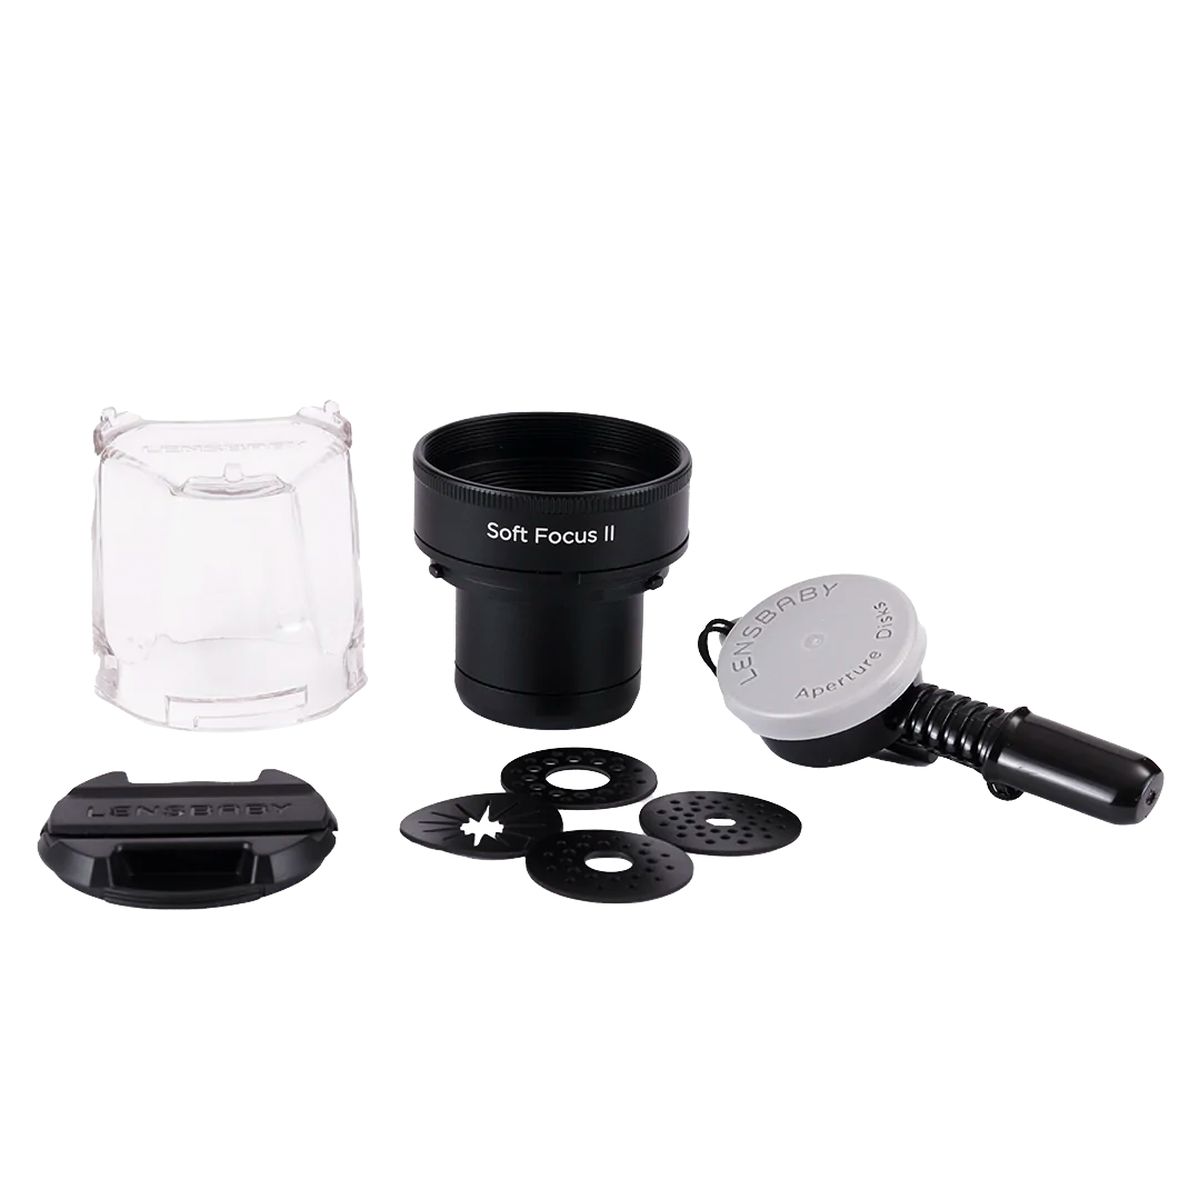 Lensbaby Soft Focus Optic Swap Macro Kit MFT